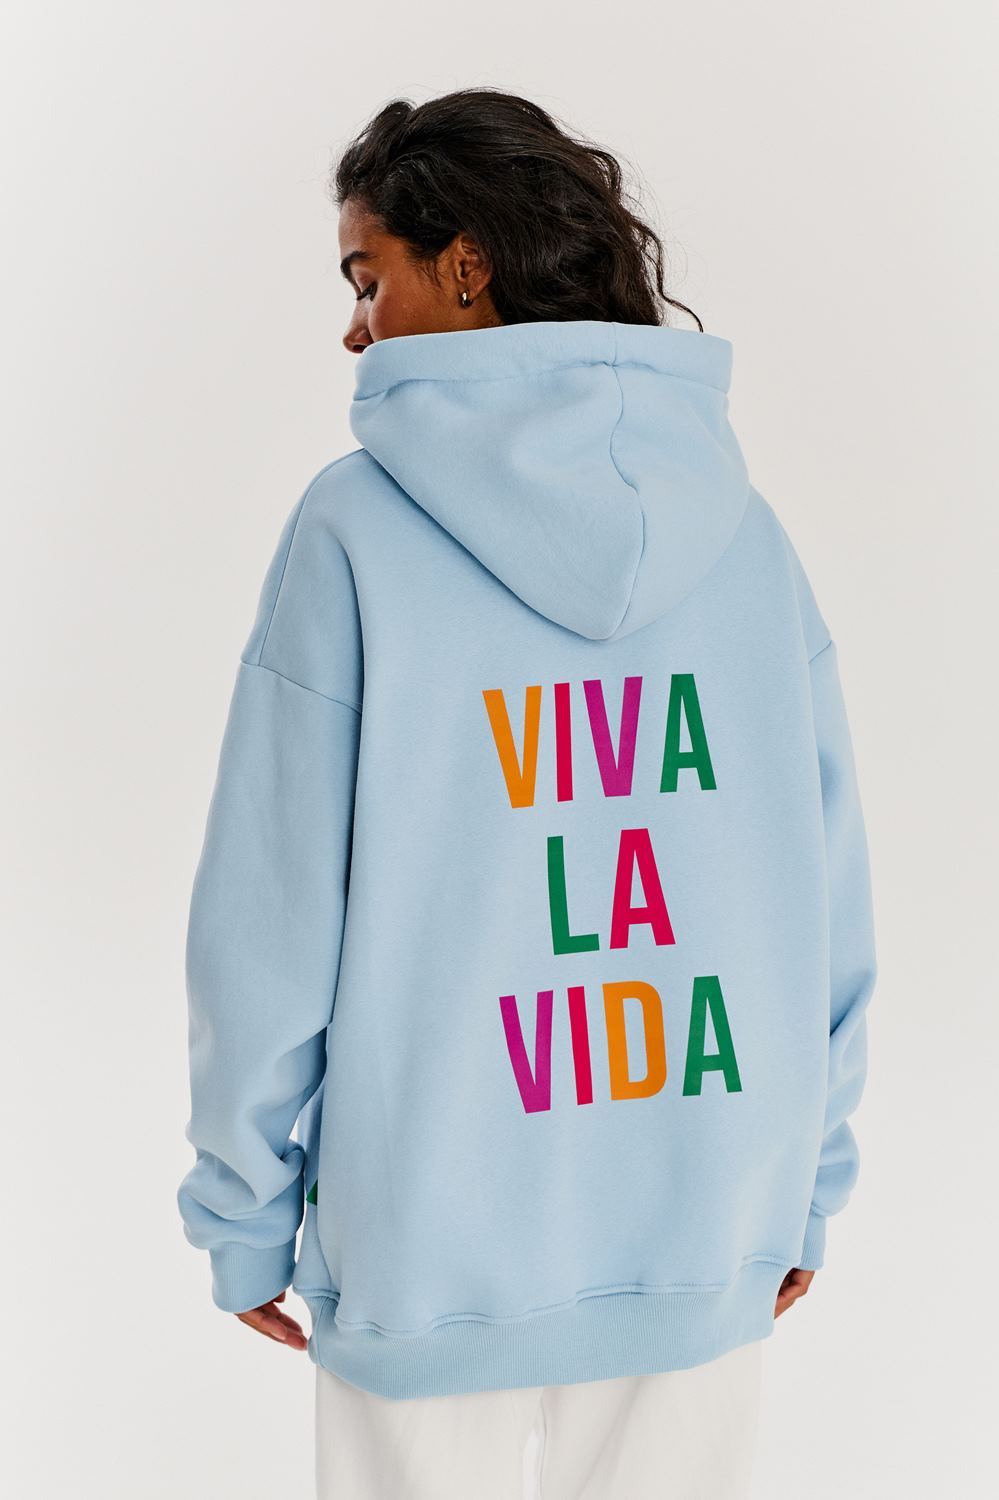 Viva La Vida hoodie